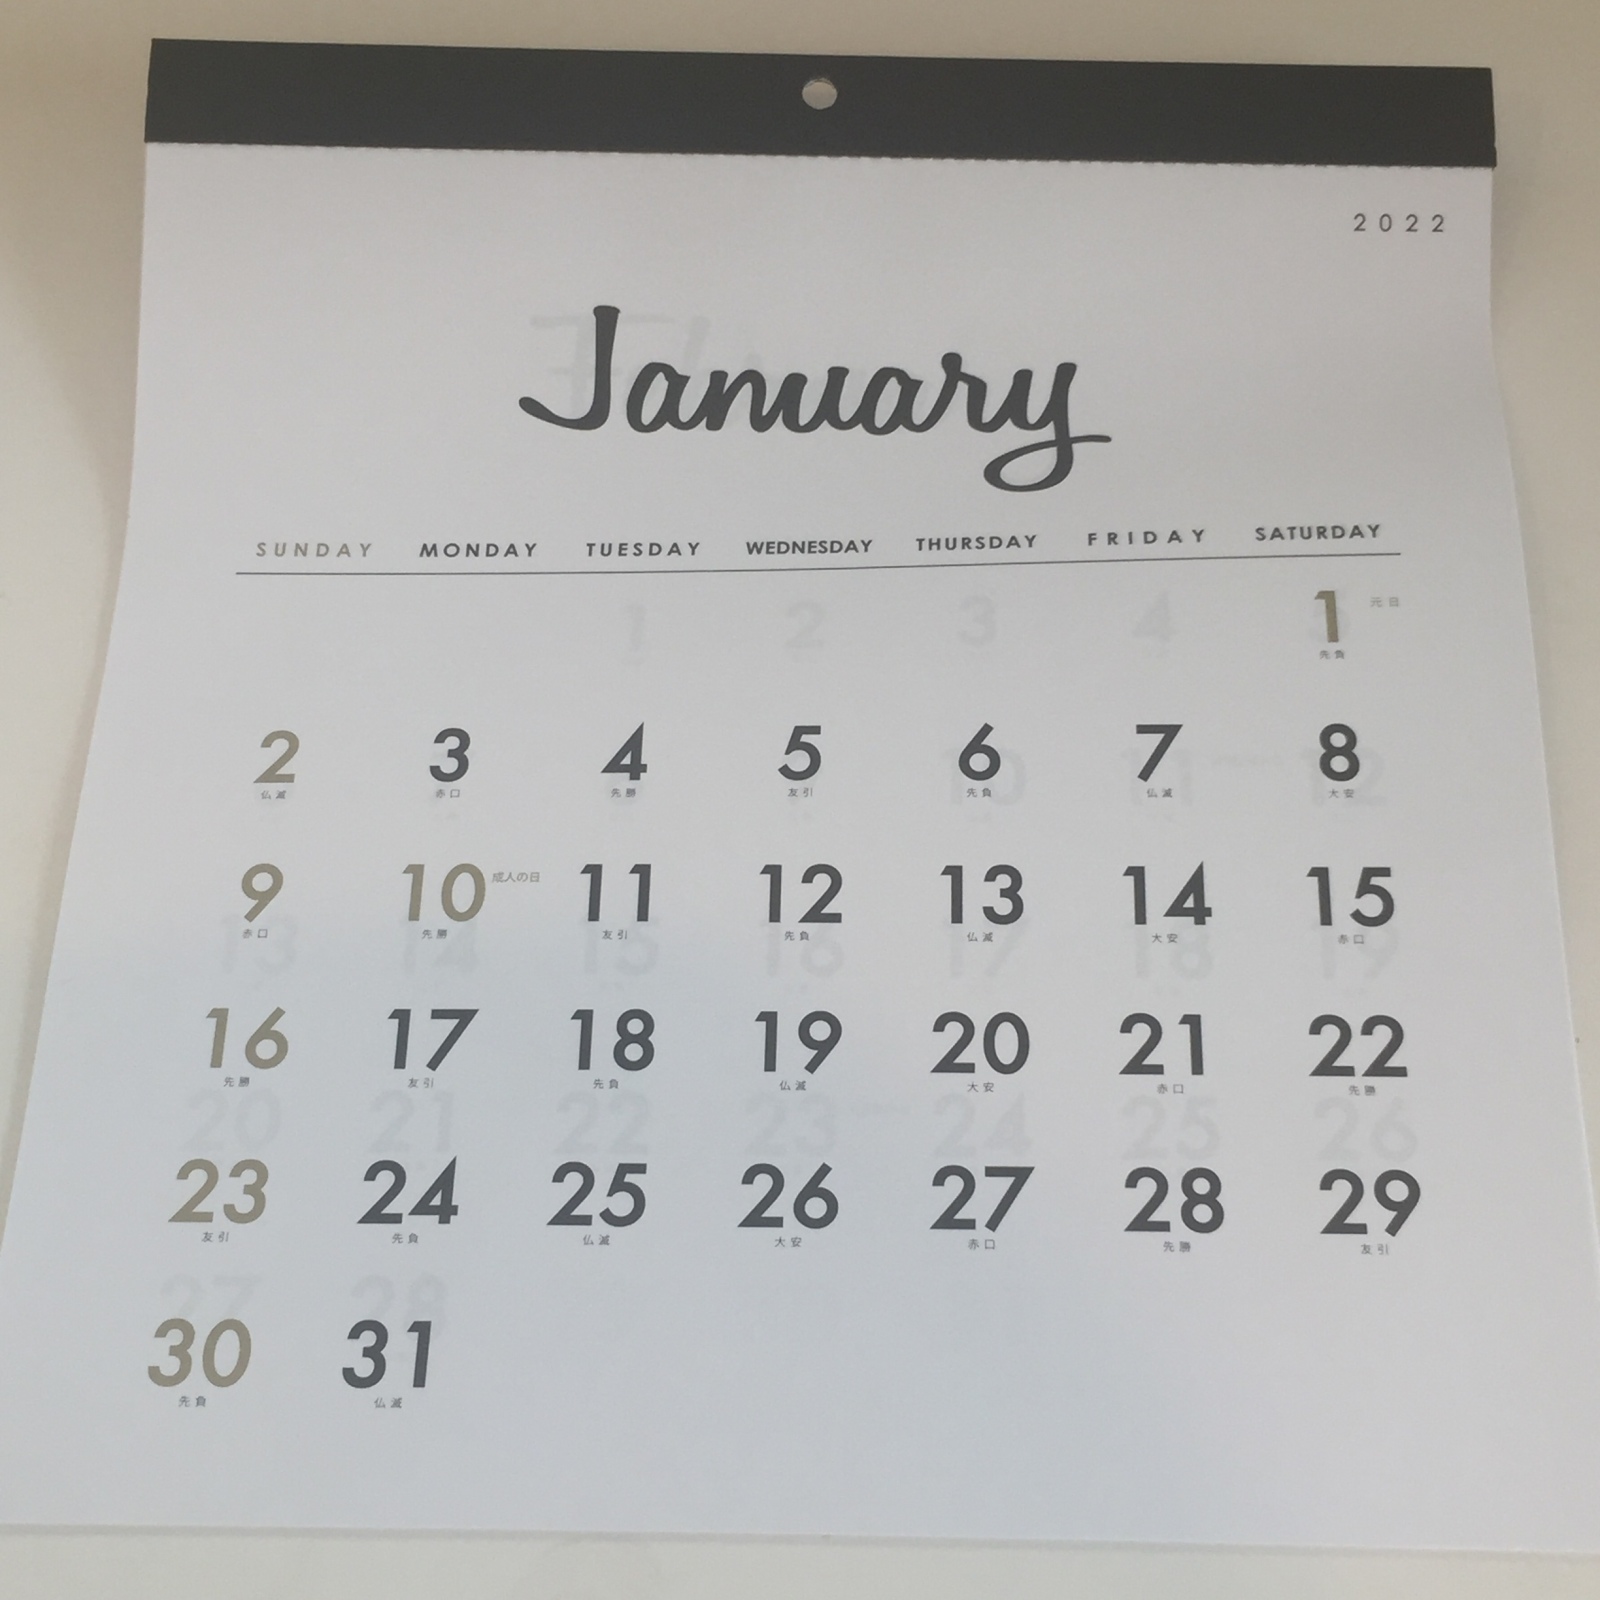 ダイソーセリアの2022年カレンダー15選】オシャレ派に機能性派にファミリー派におすすめカレンダー